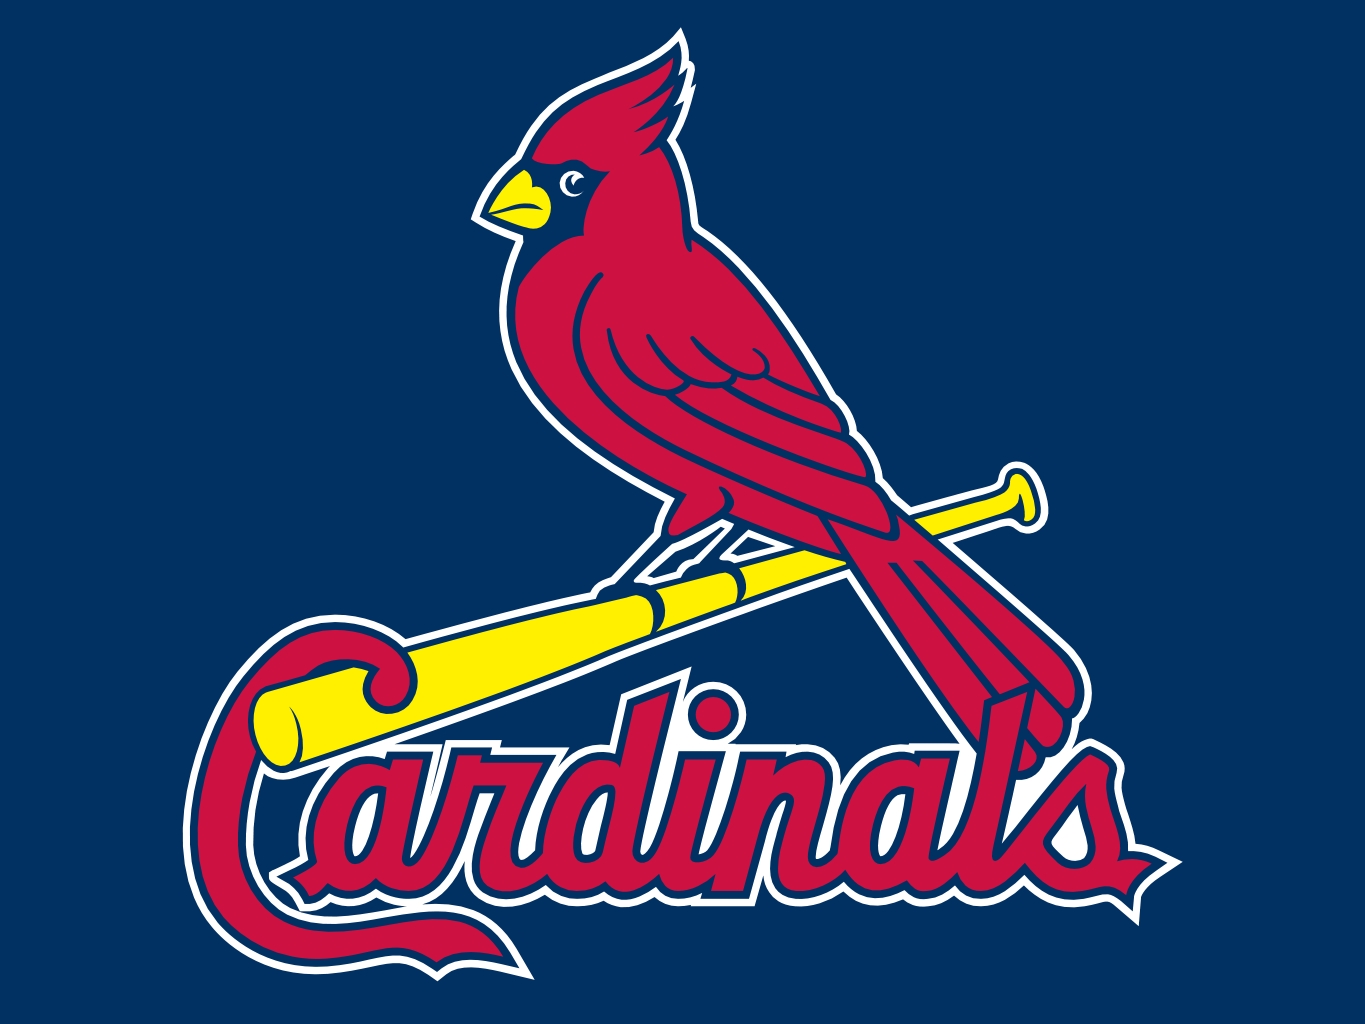 RD Cardinals logo